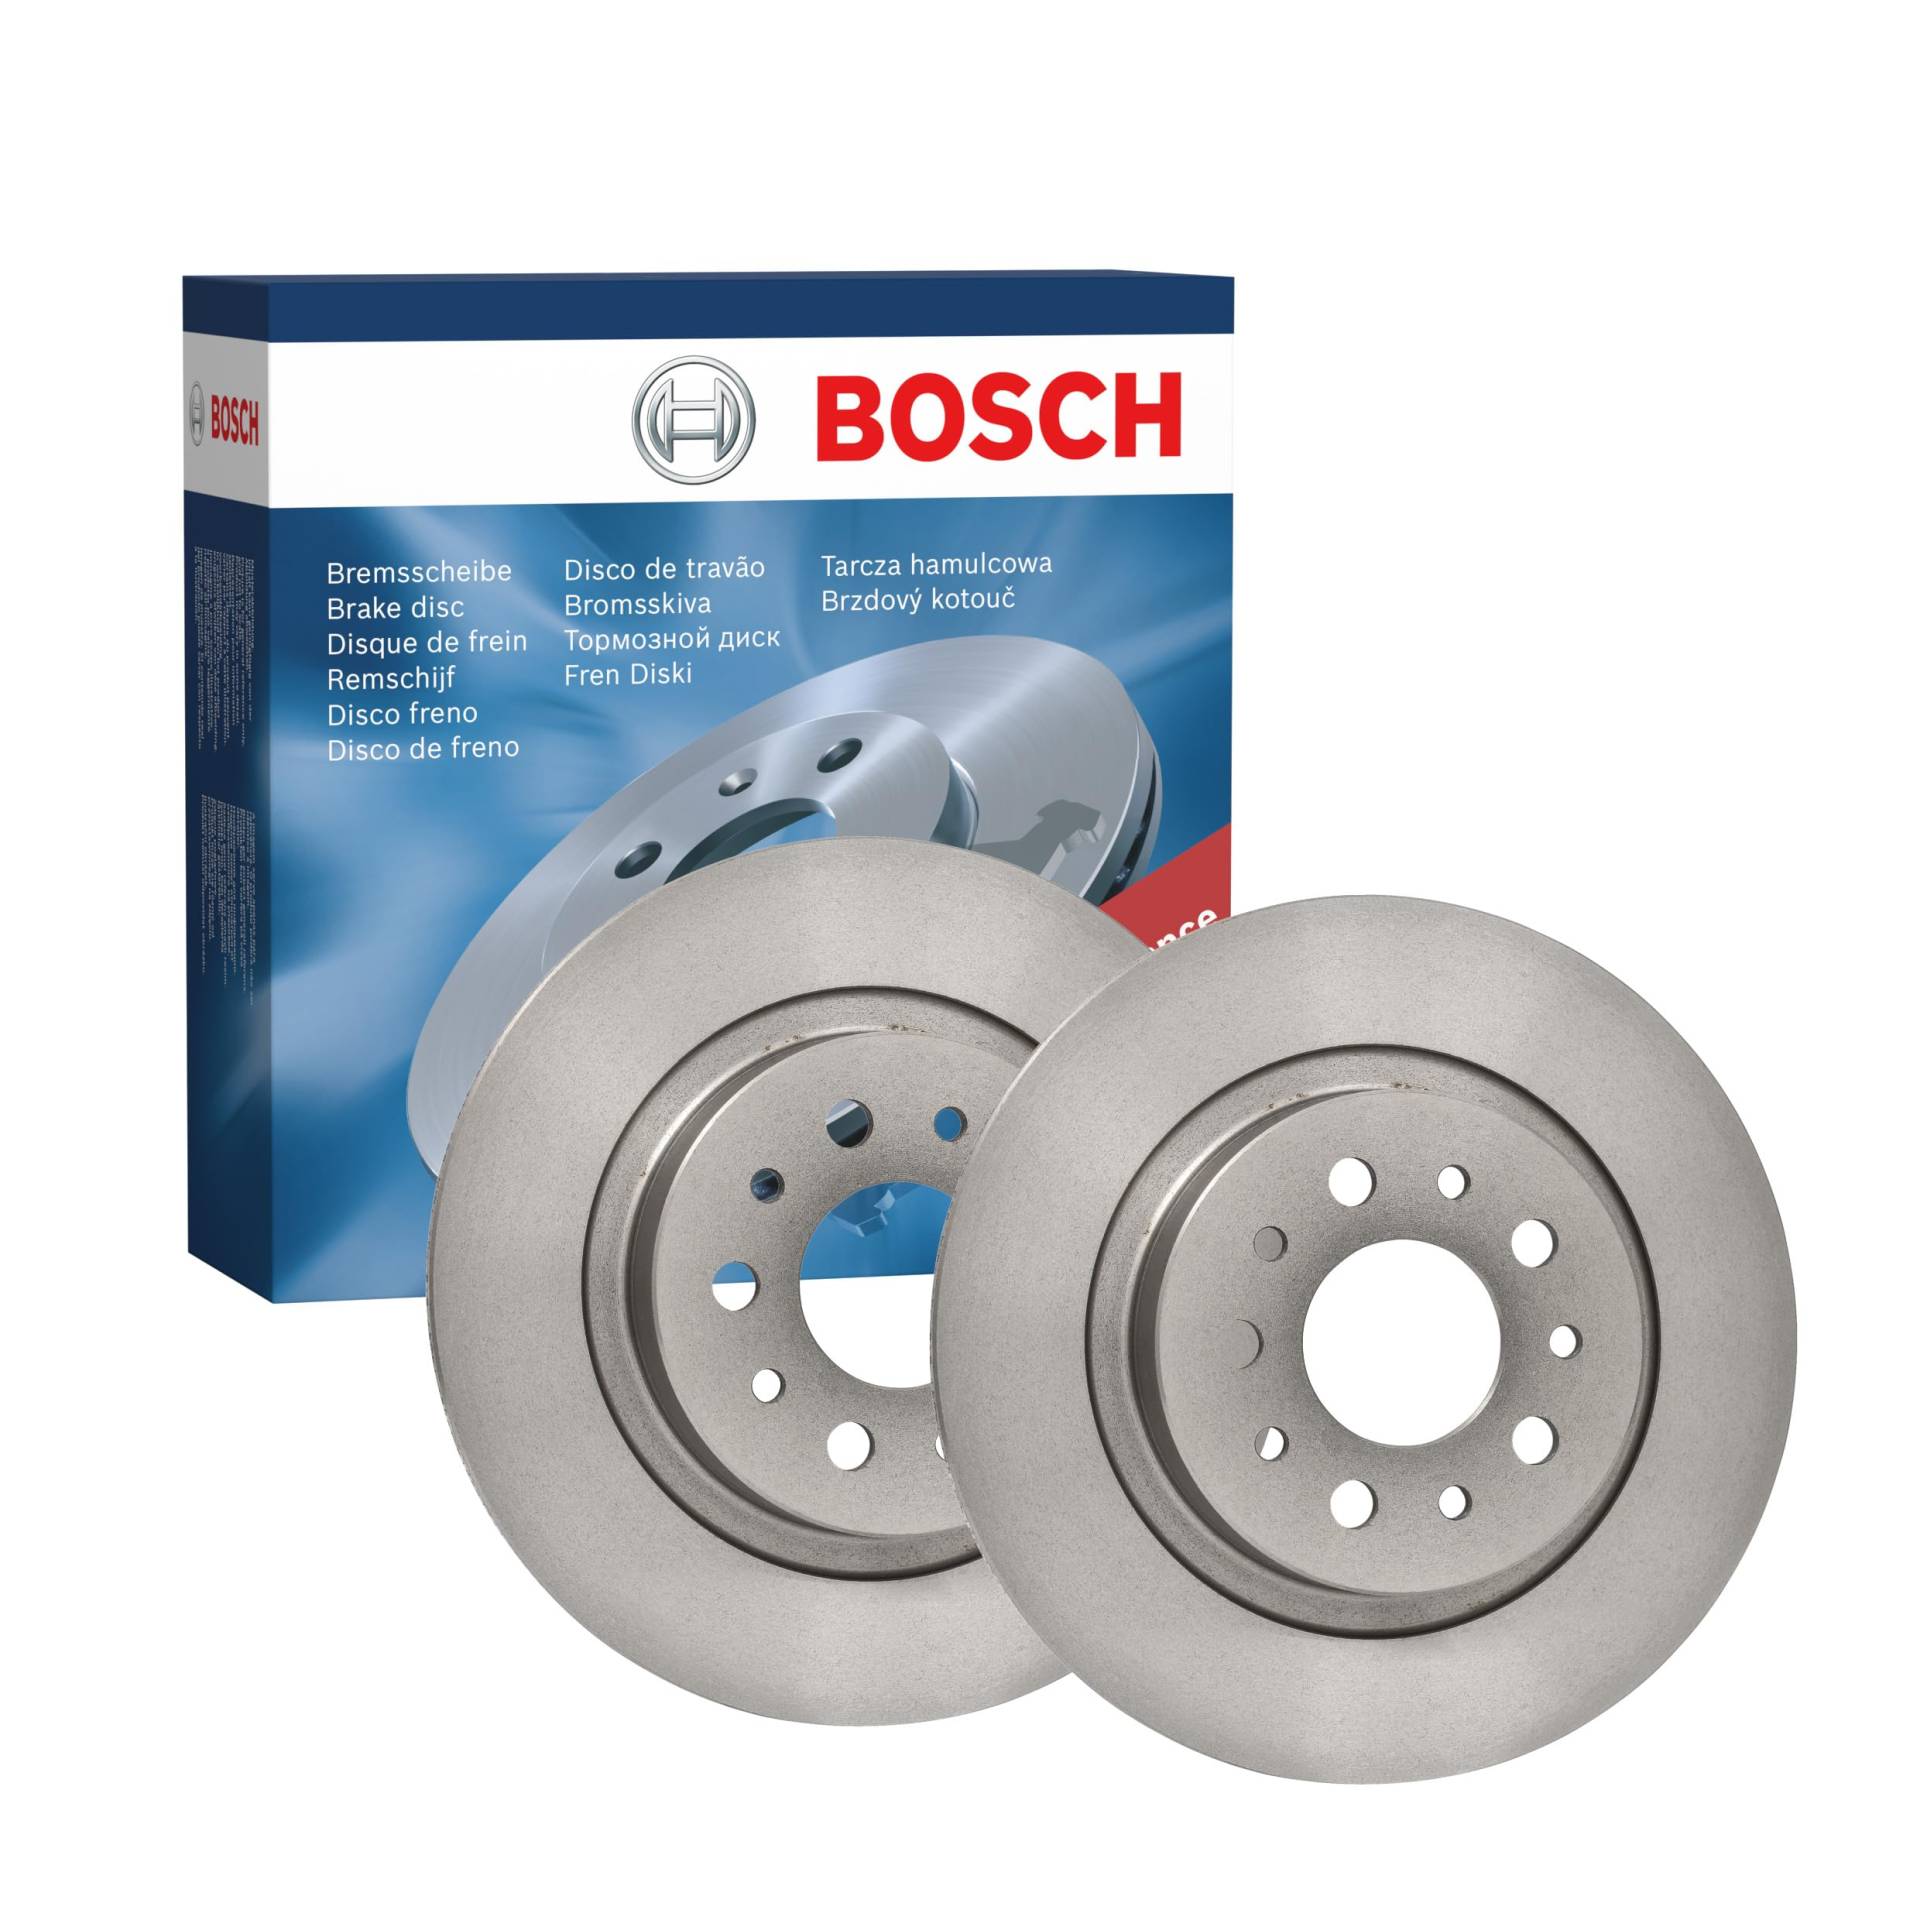 Bosch BD2419 Bremsscheiben - Hinterachse - ECE-R90 Zertifizierung - zwei Bremsscheiben pro Set von Bosch Automotive